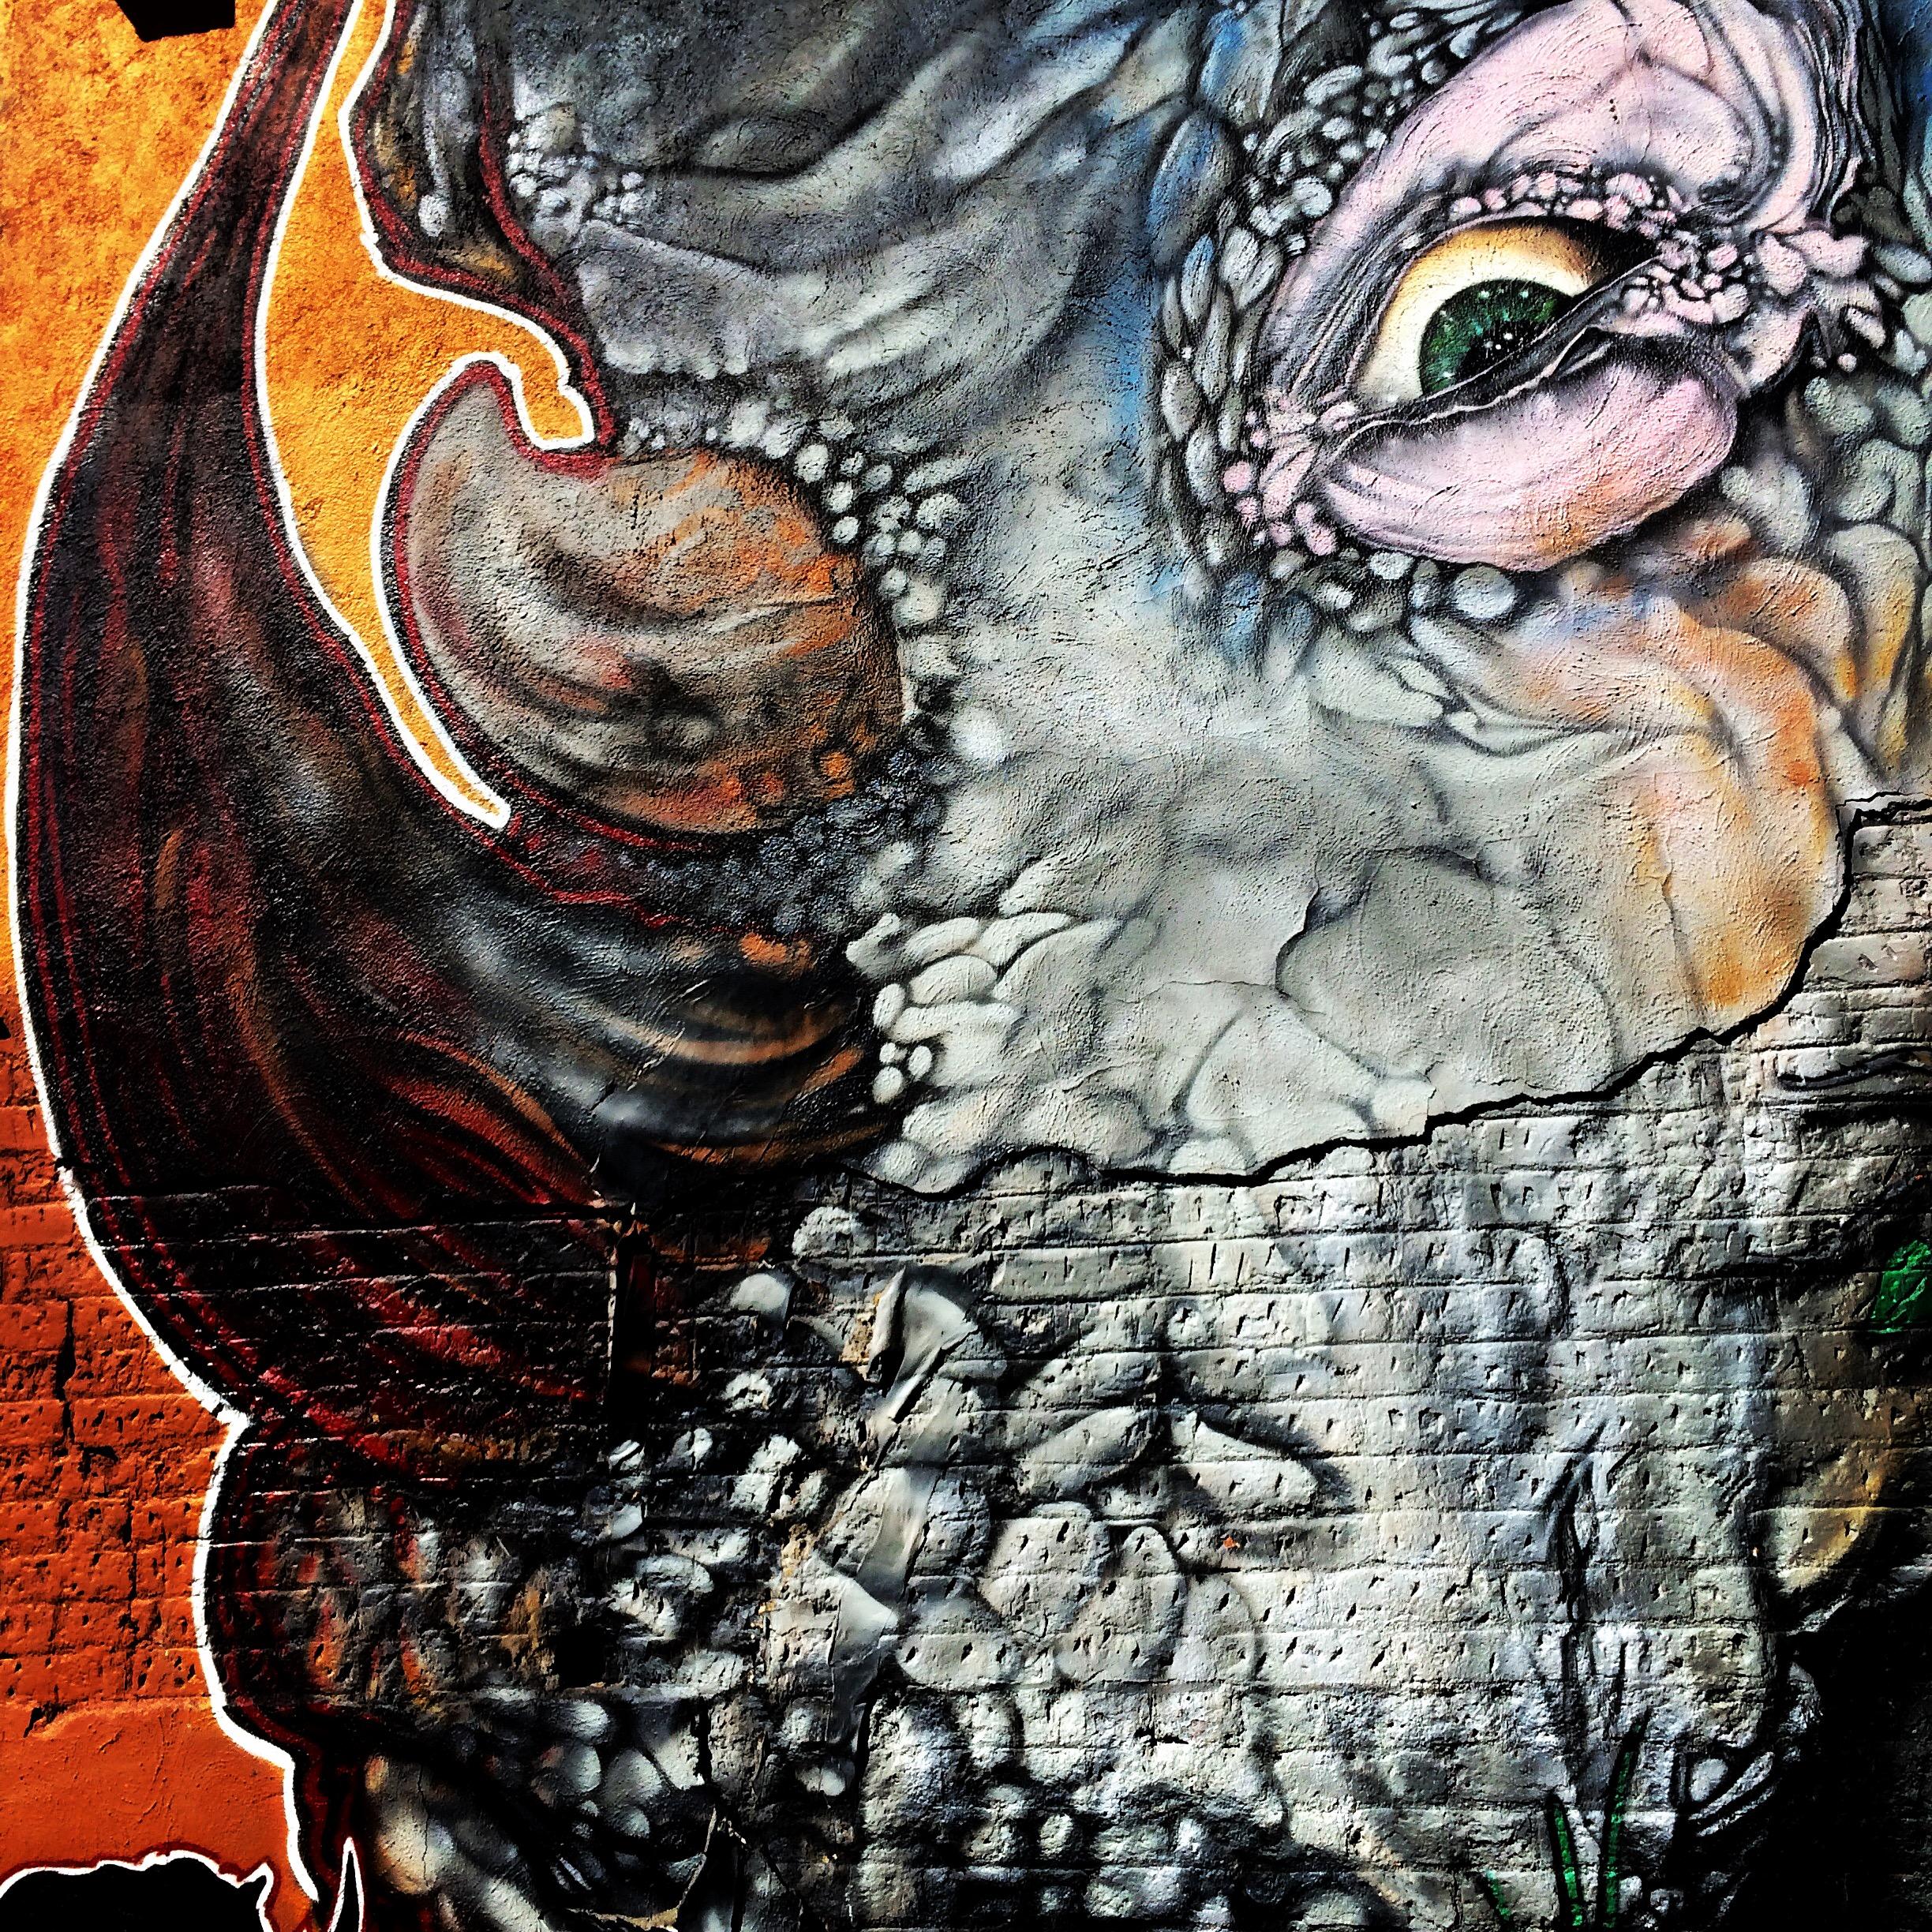 Photo: Rhino mural in RiNo